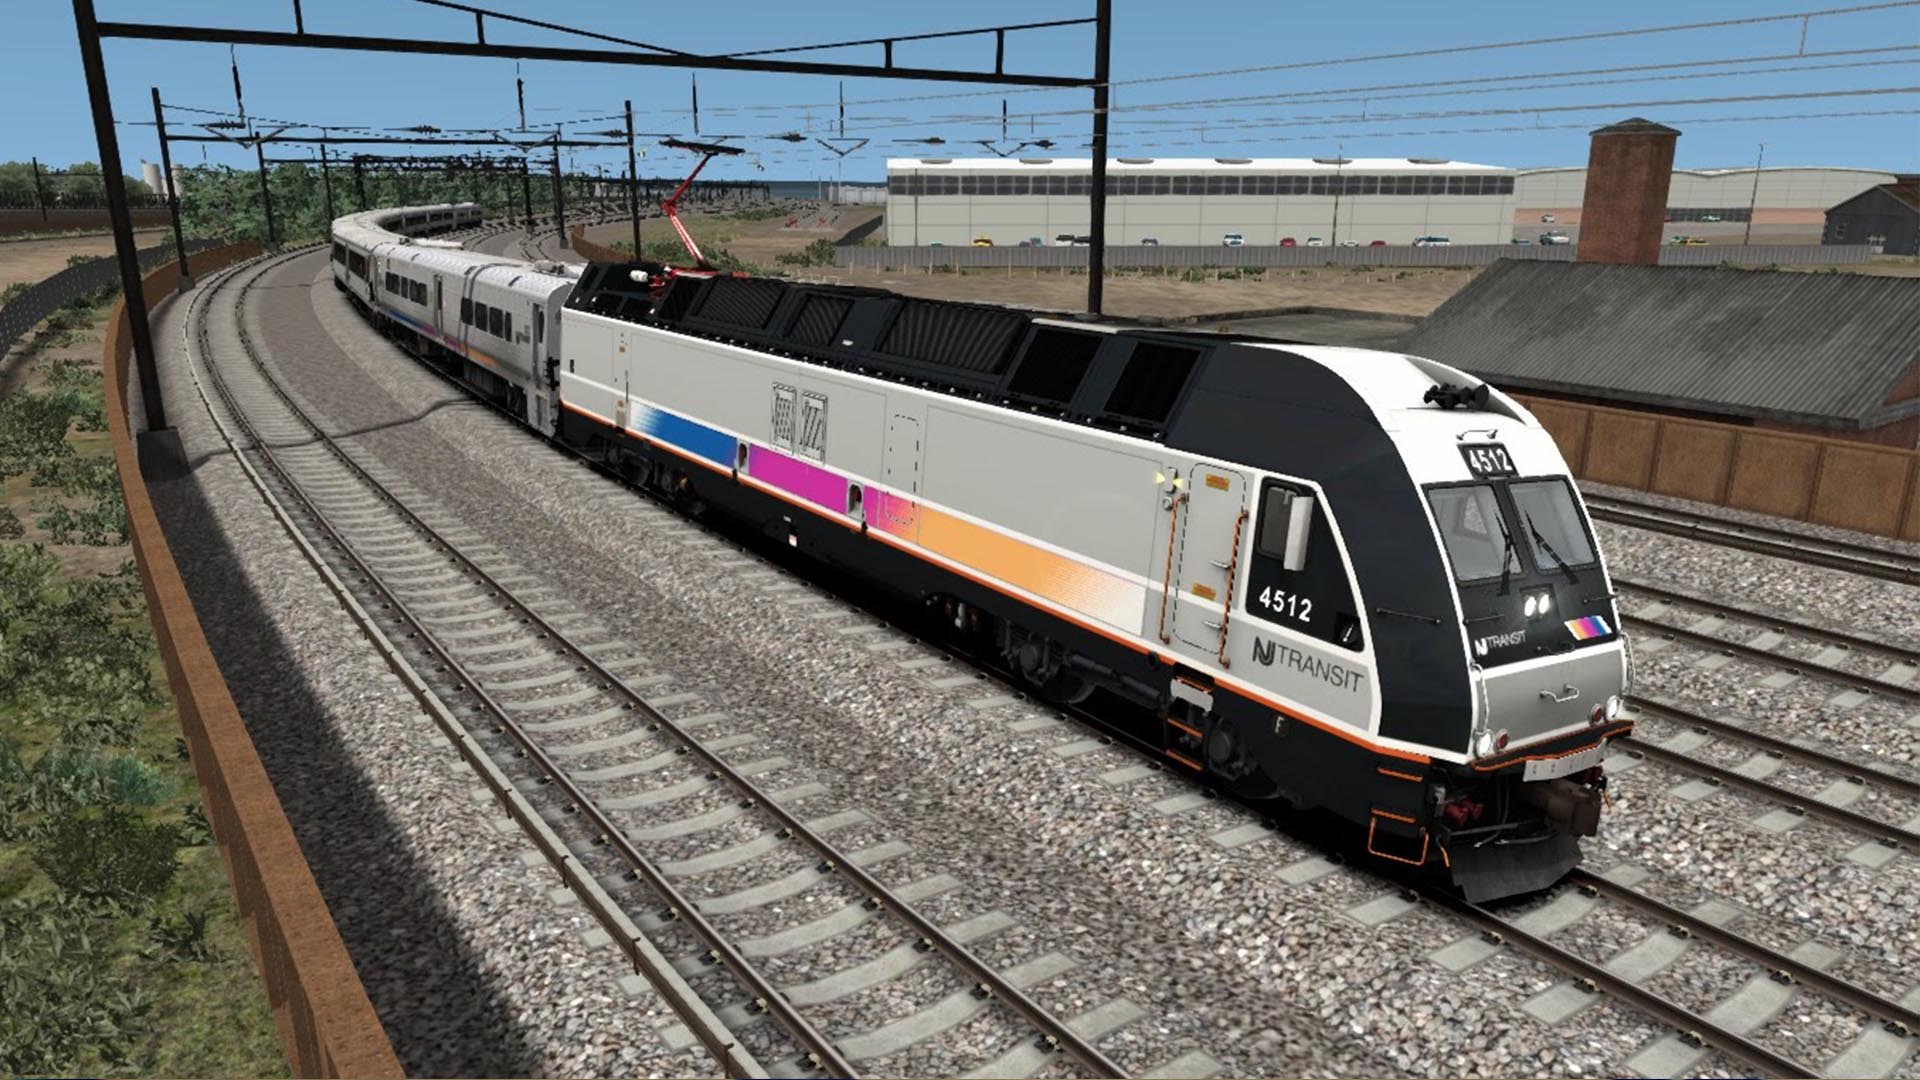 Ласт трейн. Симулятор поезда Train Simulator. Трейн симулятор 2021. Траин симулятор 2020. Траин симулятор 22.